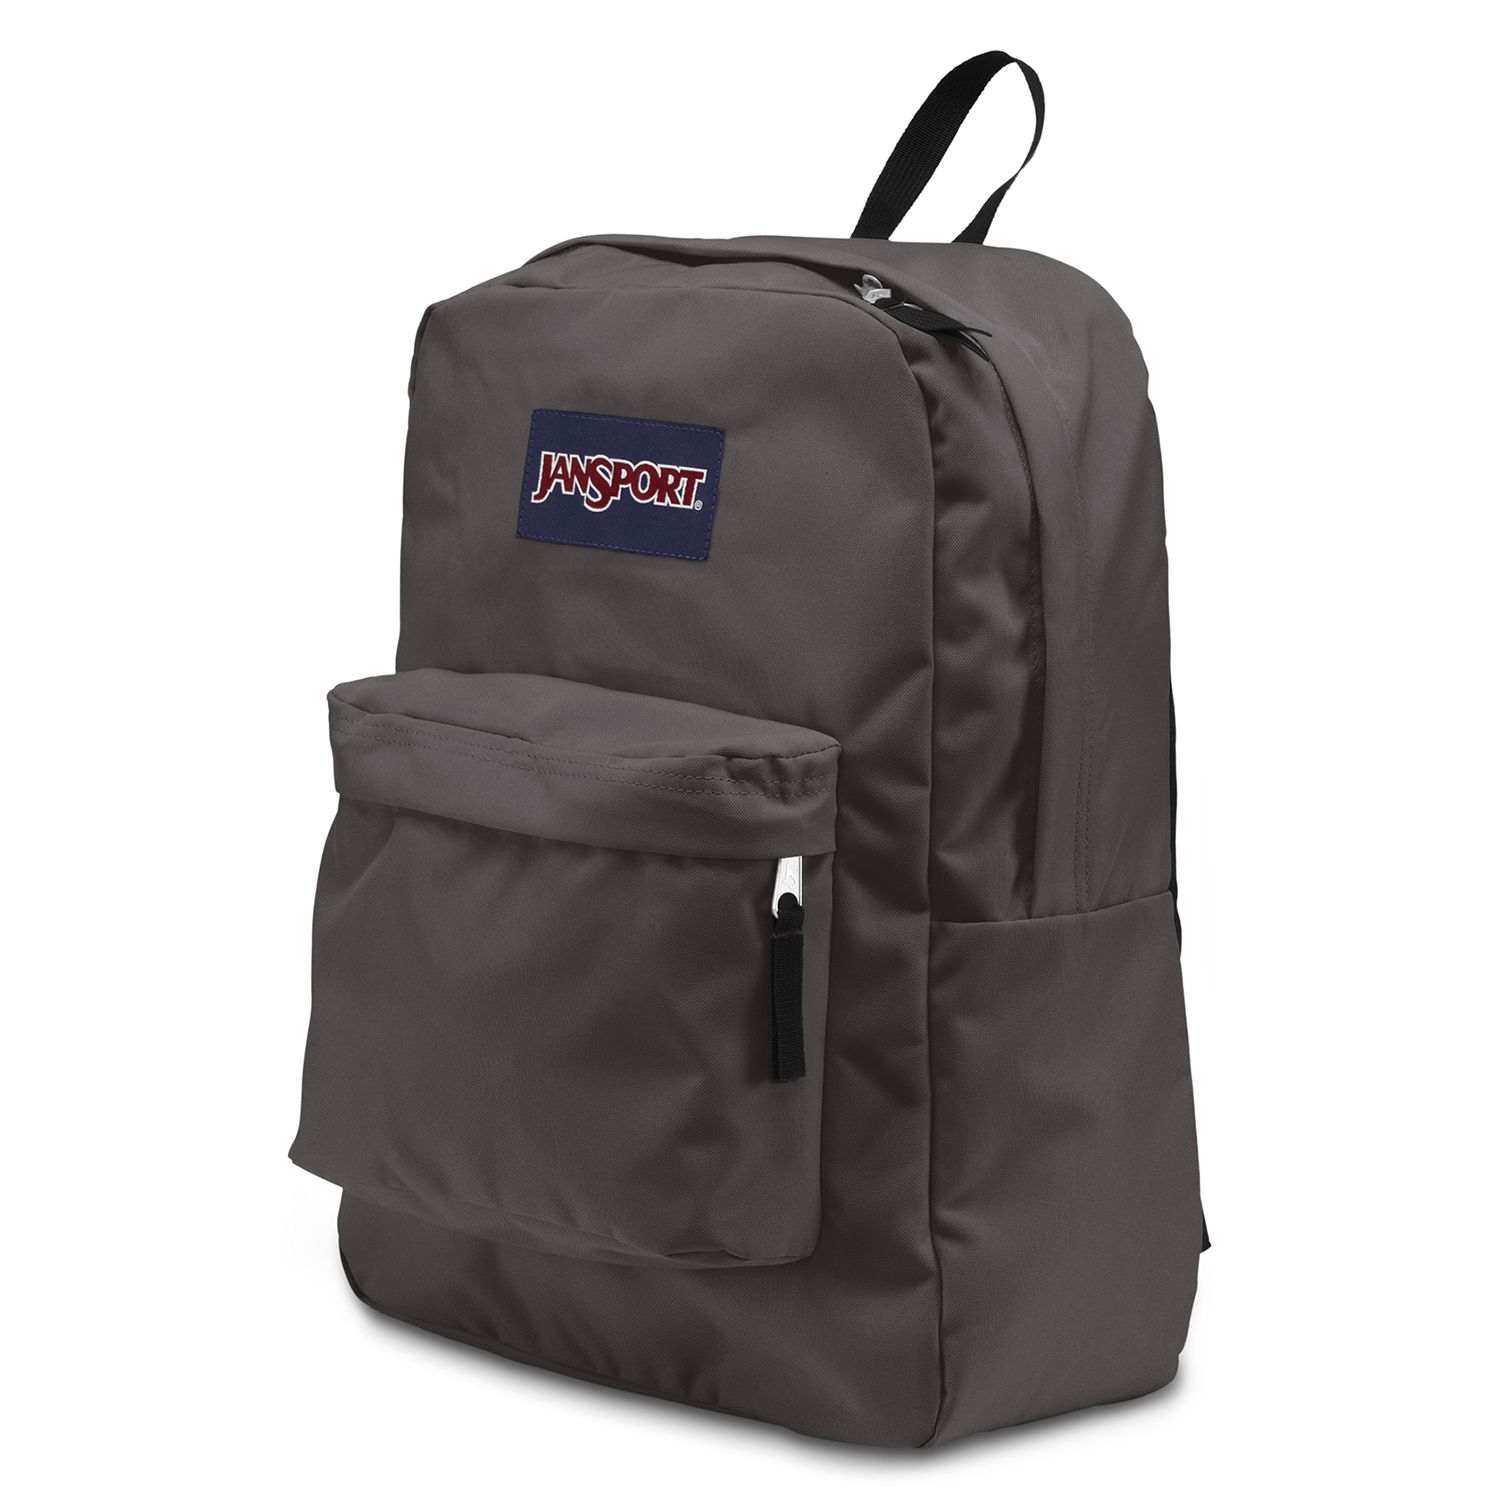 jansport monogrammed backpack